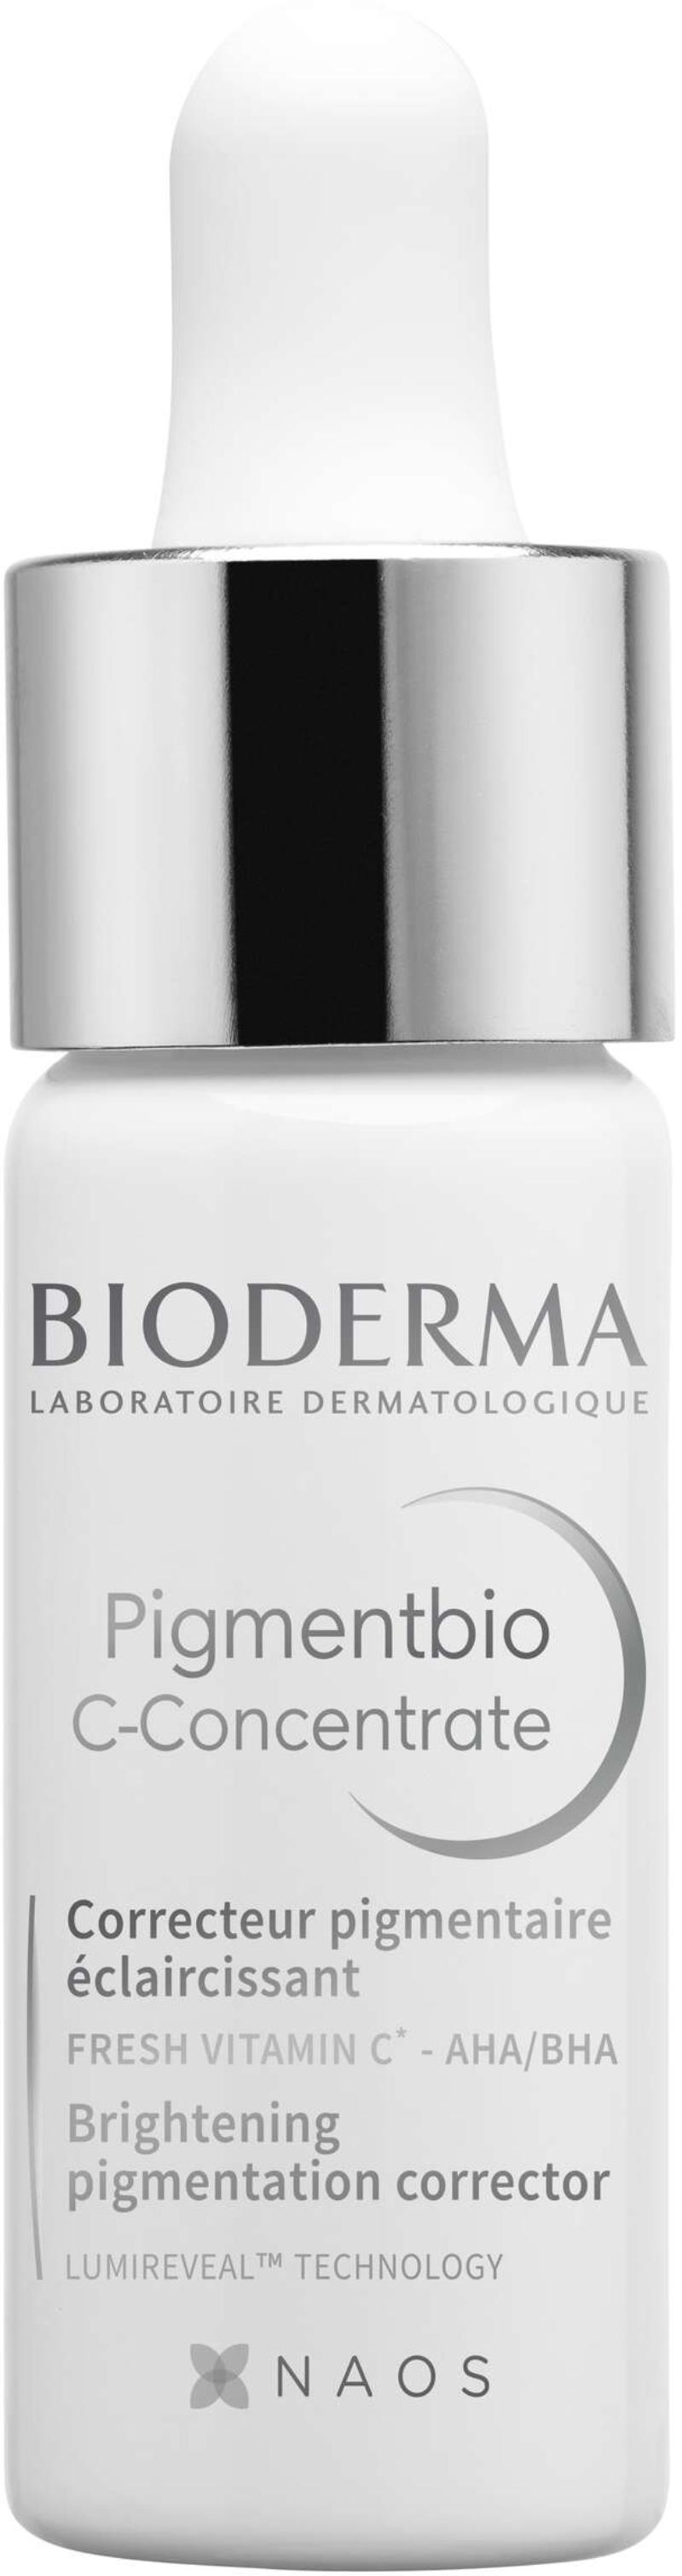 Bioderma - Pigmentbio C-Vitamiin Concentrate 15 ml